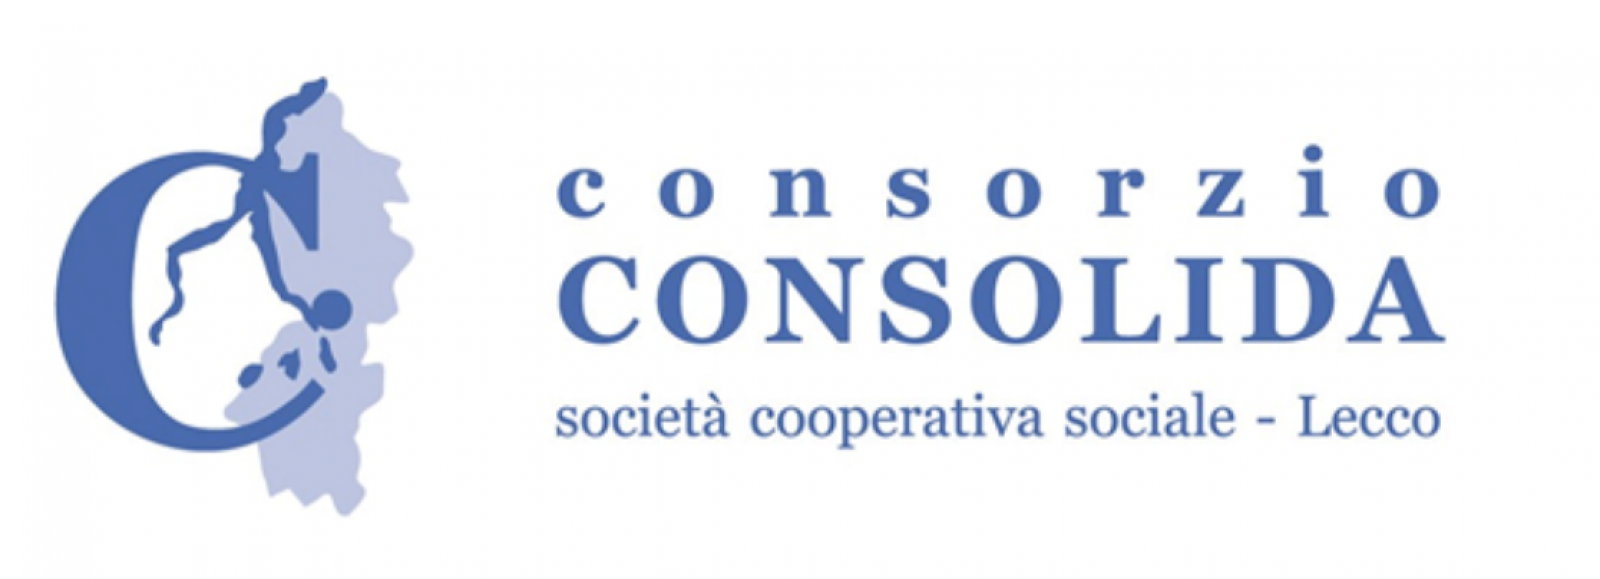 Logo Consorzio Consolida Società Cooperativa Sociale